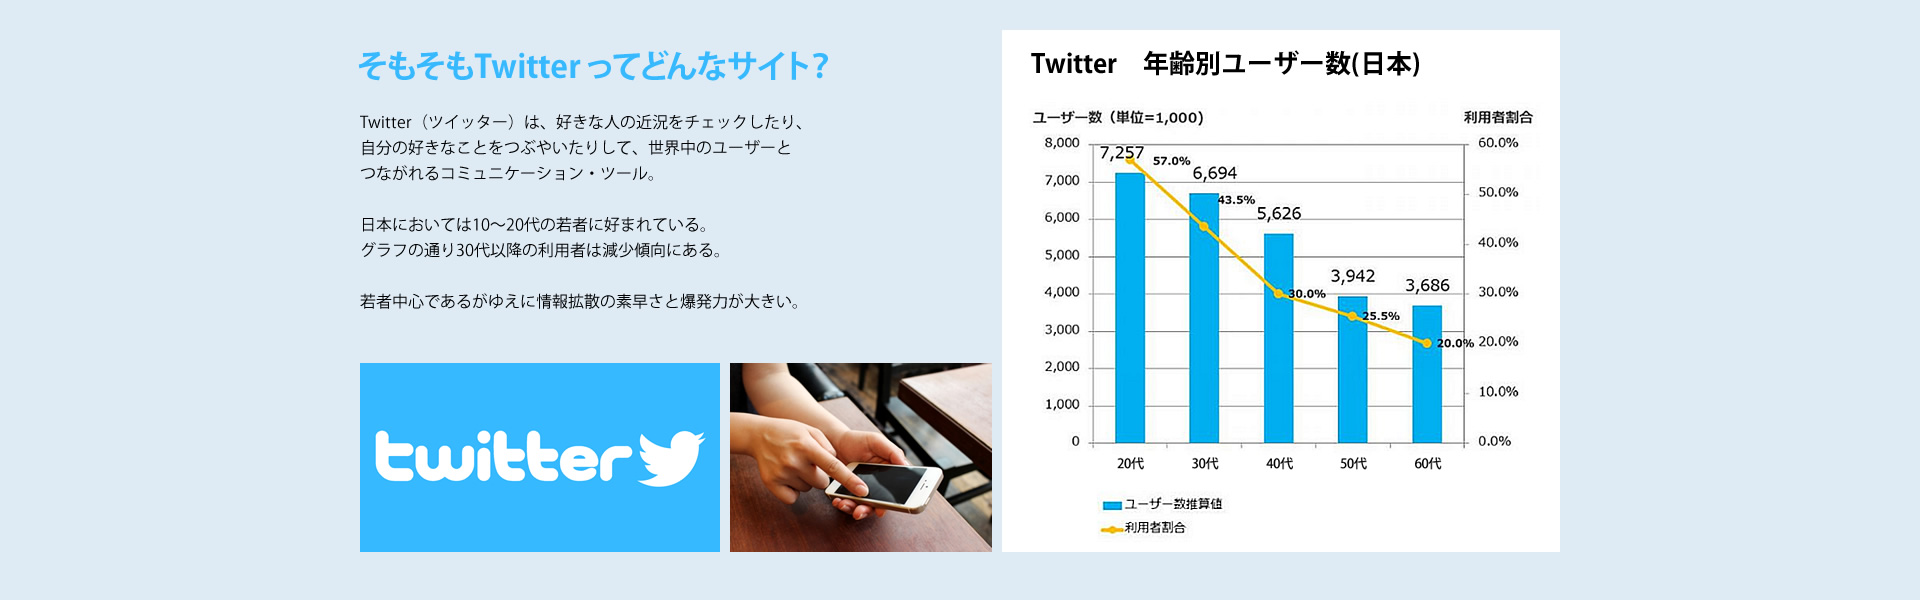 そもそもTwitter ってどんなサイト？
Twitter（ツイッター）は、好きな人の近況をチェックしたり、自分の好きなことをつぶやいたりして、世界中のユーザーとつながれるコミュニケーション・ツール。日本においては10～20代の若者に好まれている。グラフの通り30代以降の利用者は減少傾向にある。若者中心であるがゆえに情報拡散の素早さと爆発力が大きい。